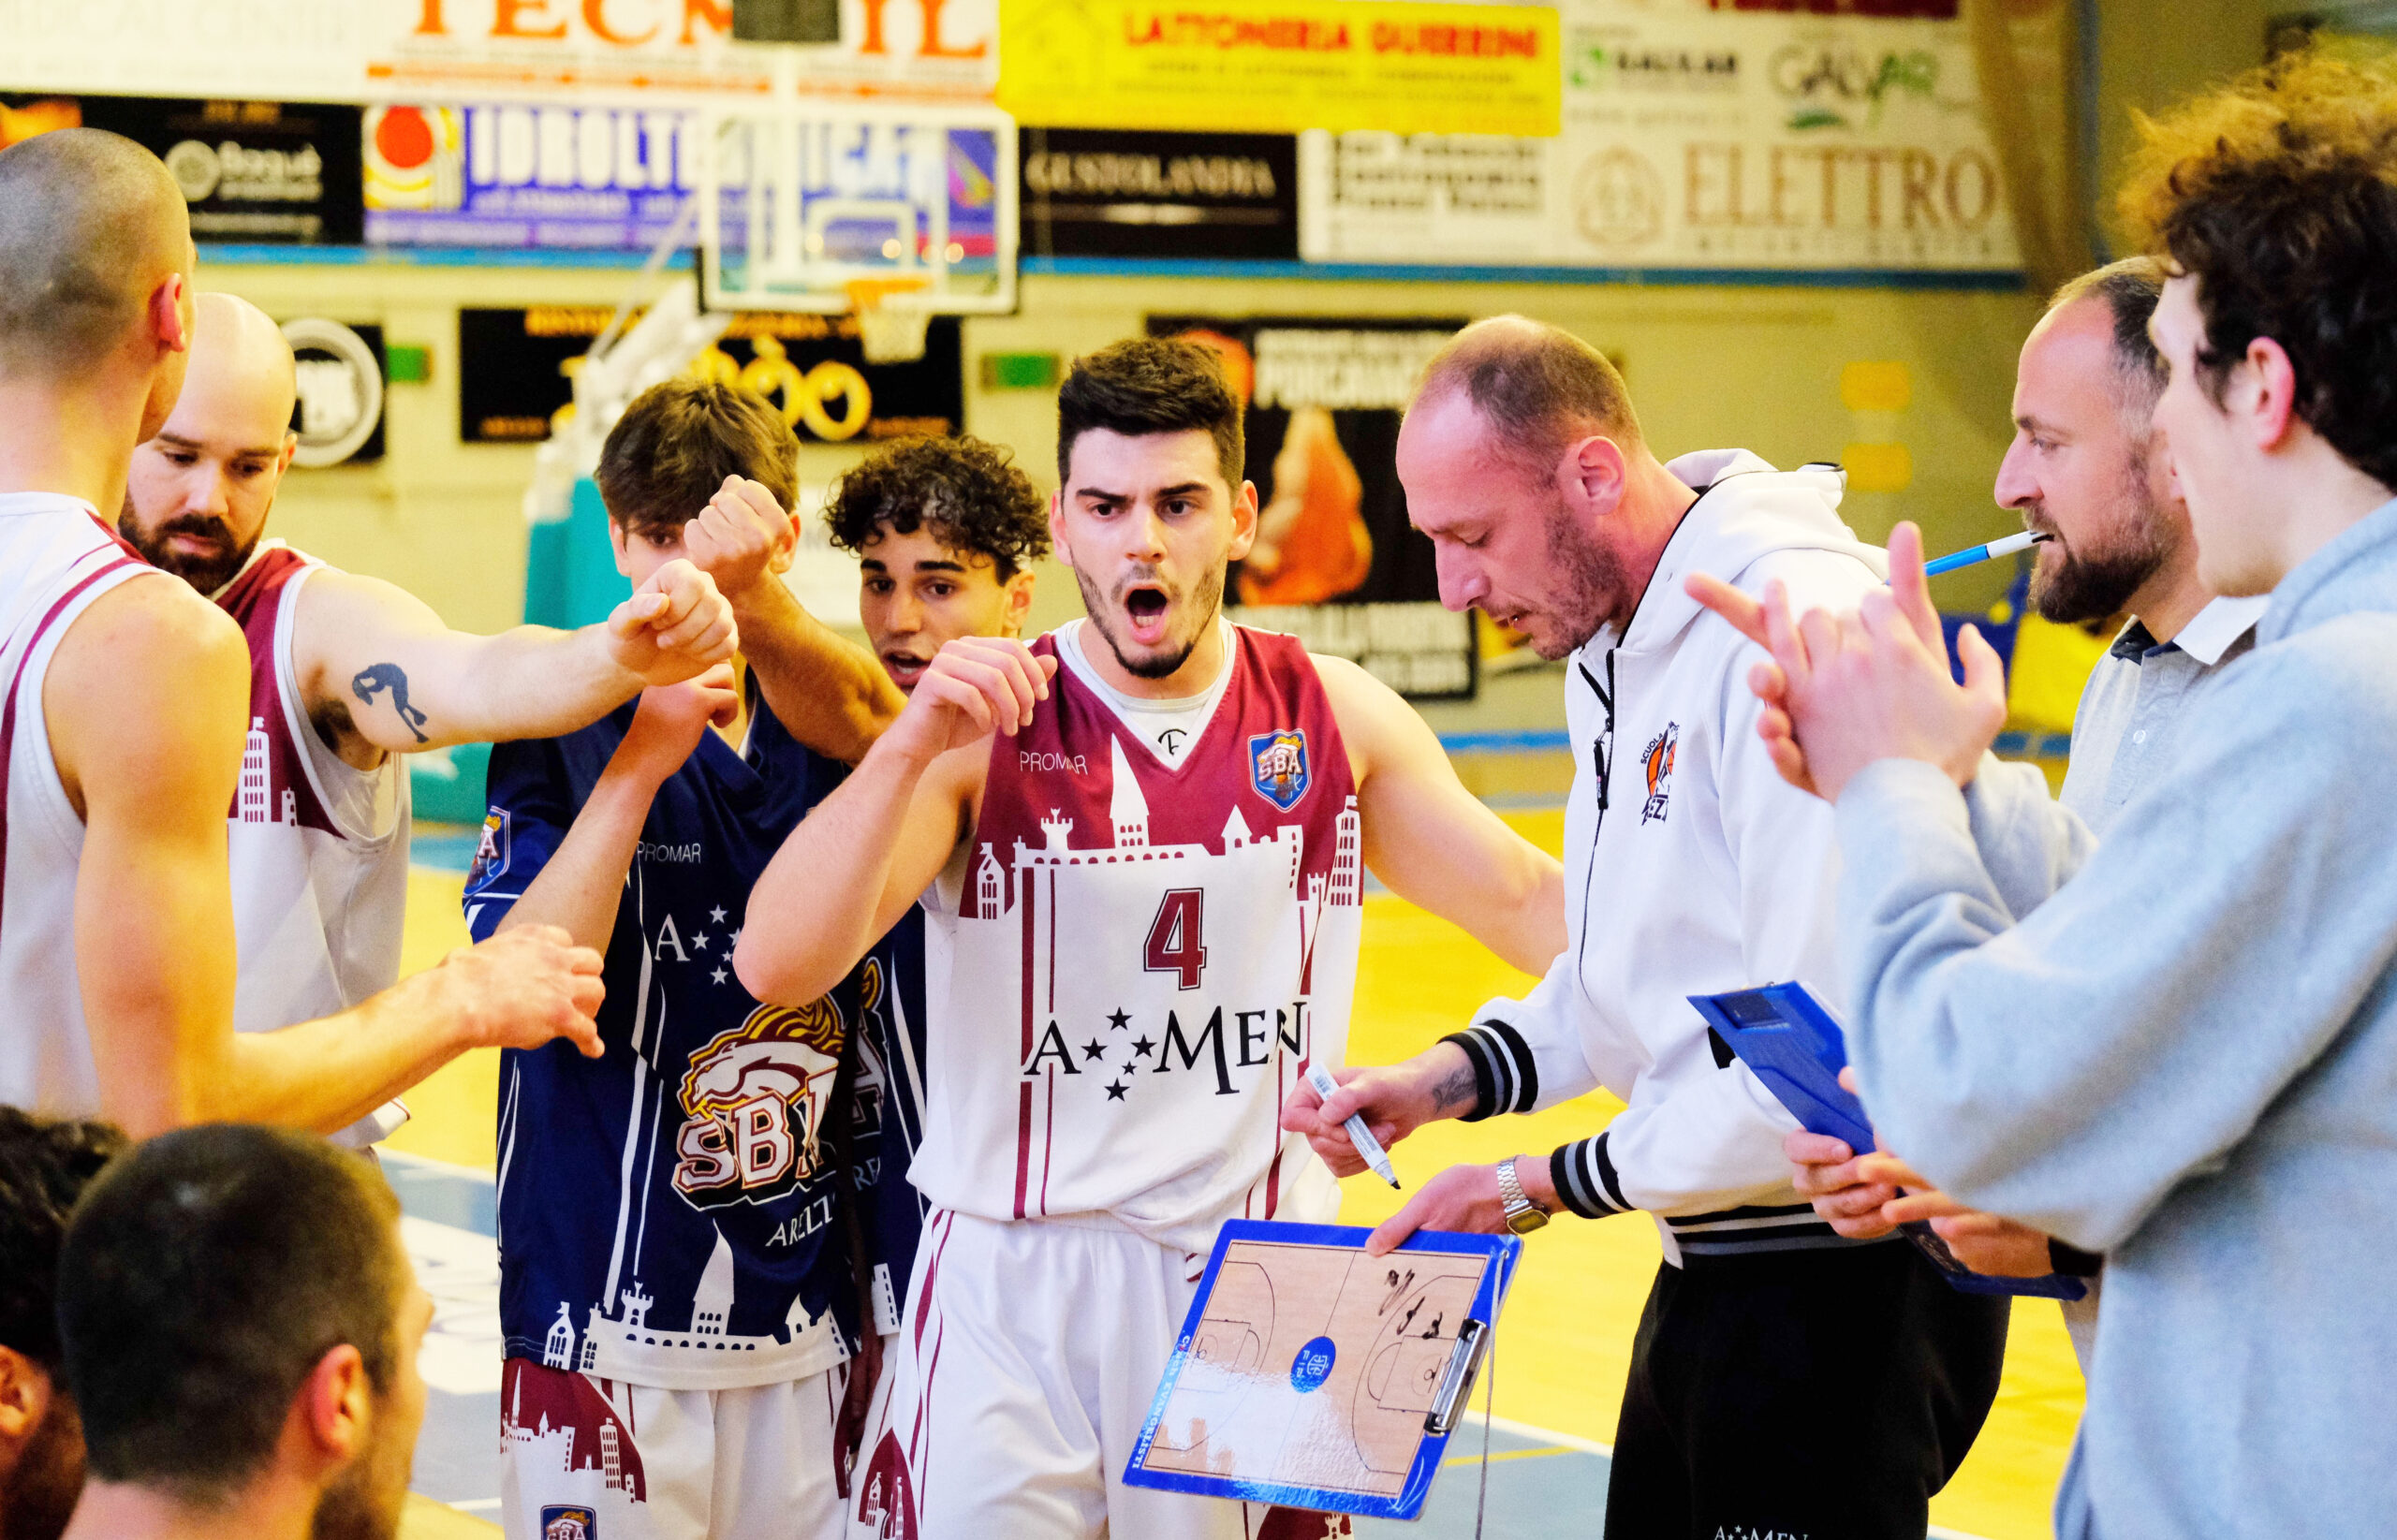 Amen Scuola Basket Arezzo, ufficiale il calendario della Finale PlayOff per la Promozione in Serie B